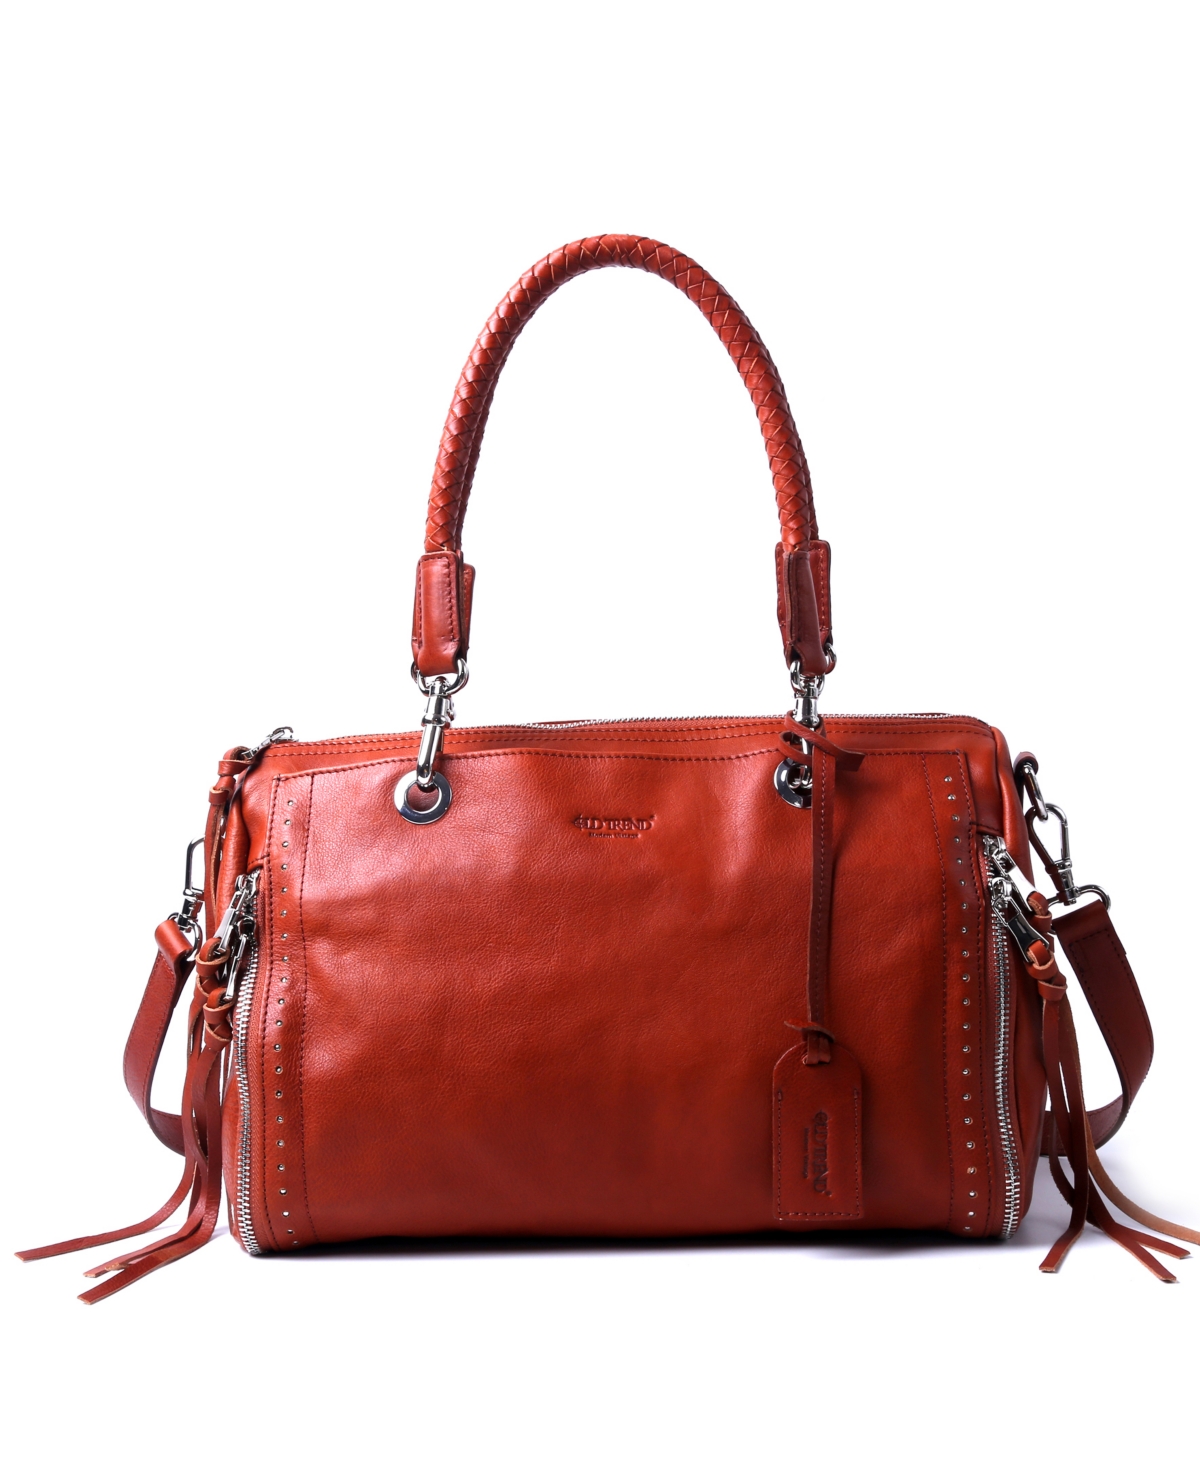 Women's Genuine Leather Lily Satchel Bag - Cognac